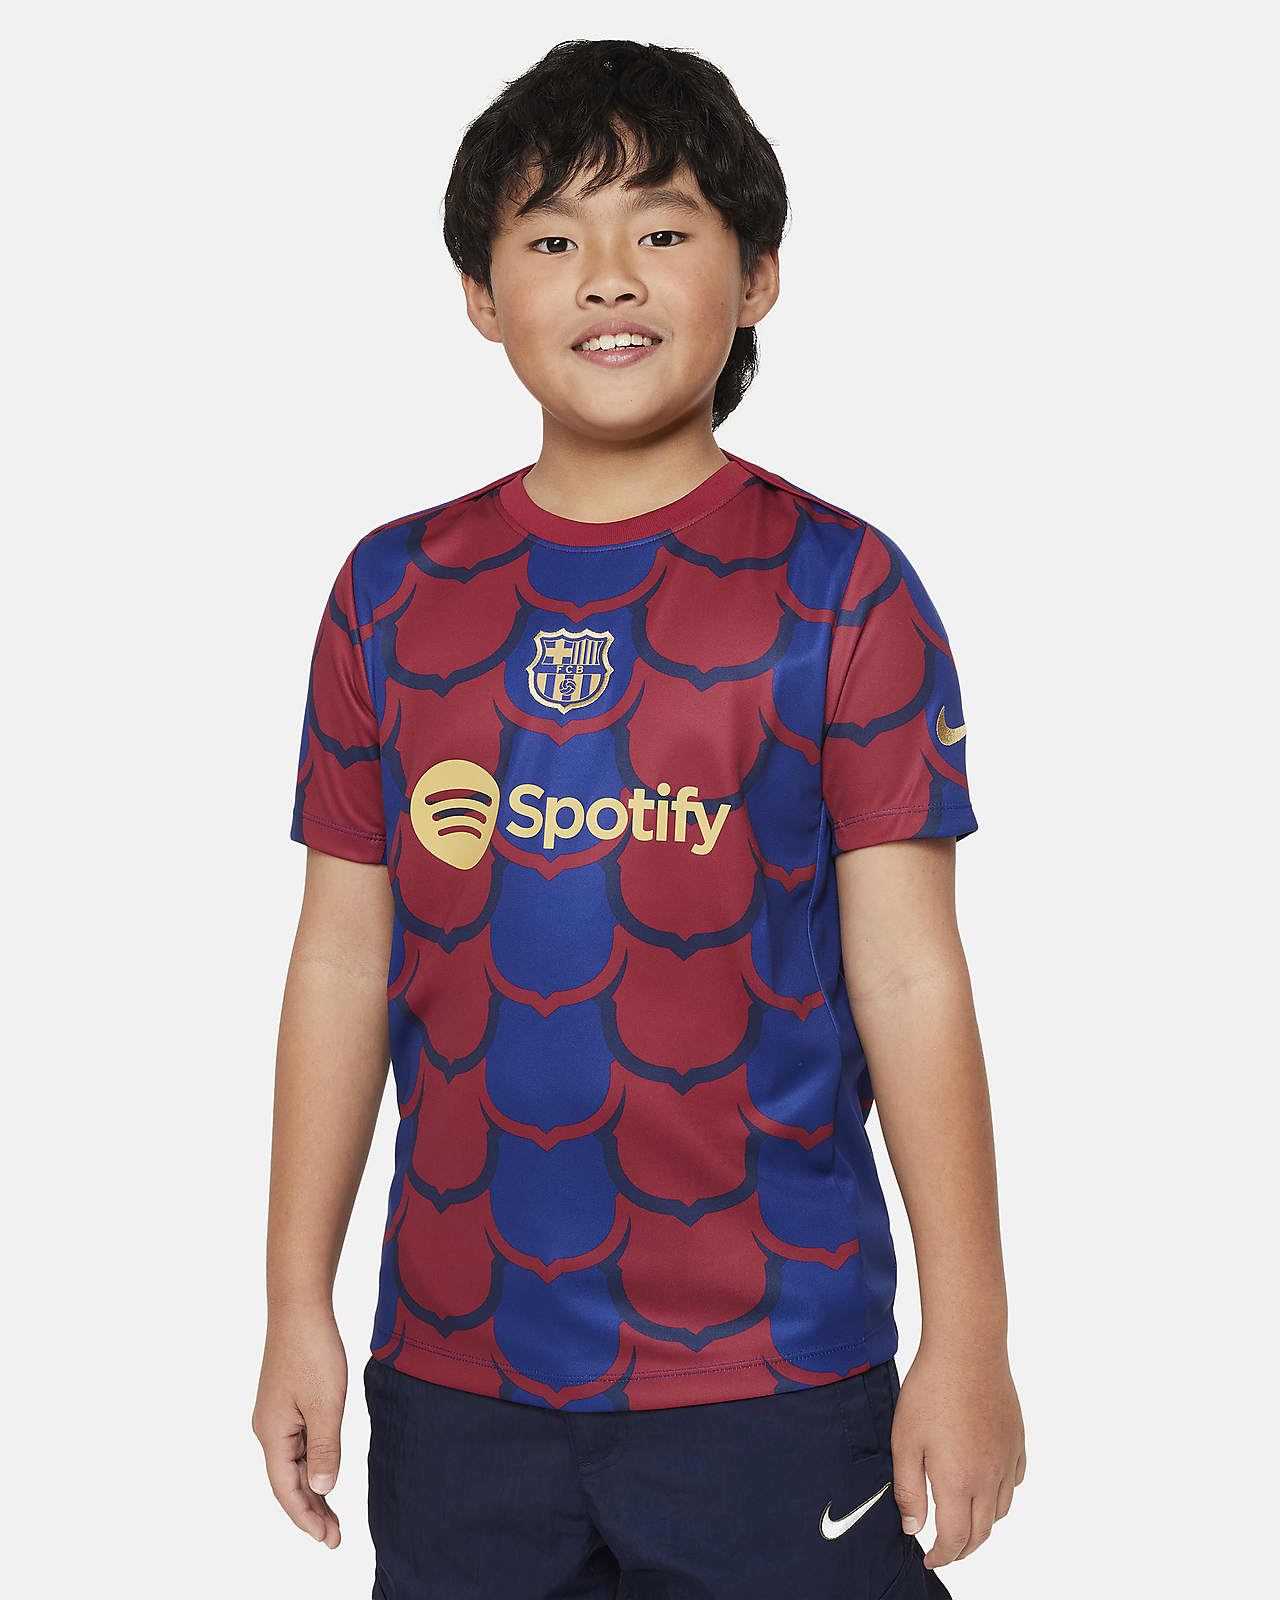 Ποδοσφαιρική μπλούζα προθέρμανσης Nike Dri-FIT Μπαρτσελόνα Academy Pro για μεγάλα παιδιά